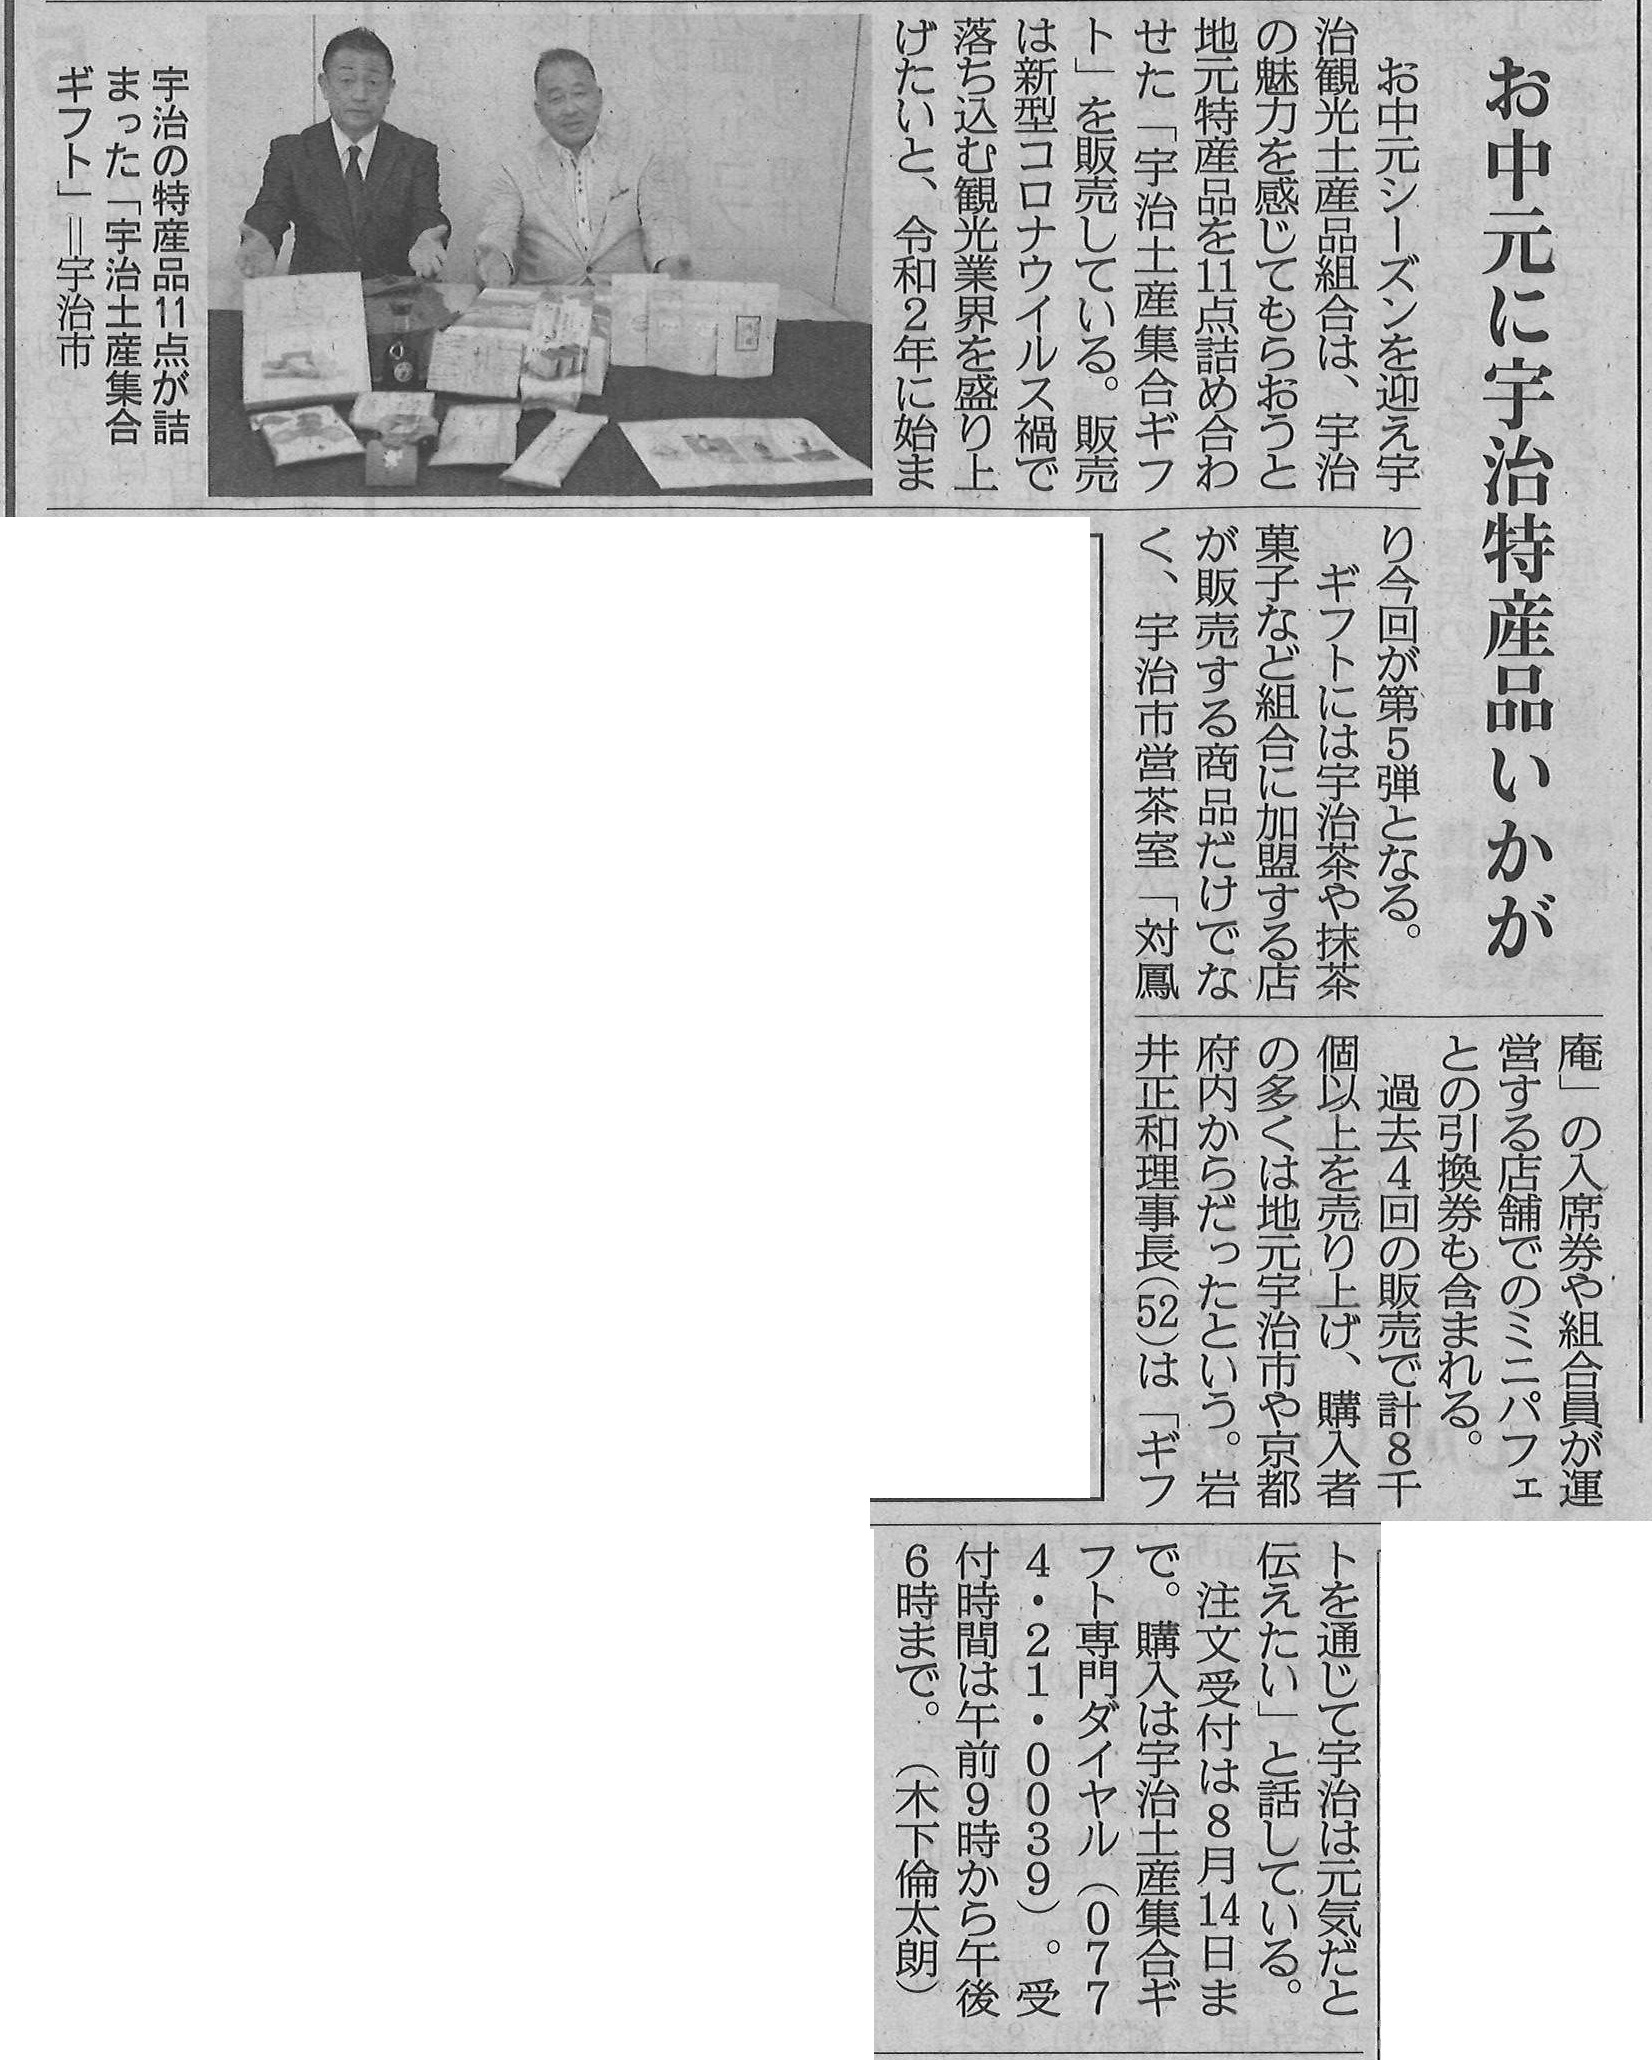 7月7日 産経新聞にて、宇治観光土産品組合のお中元集合ギフトに関する記事が掲載